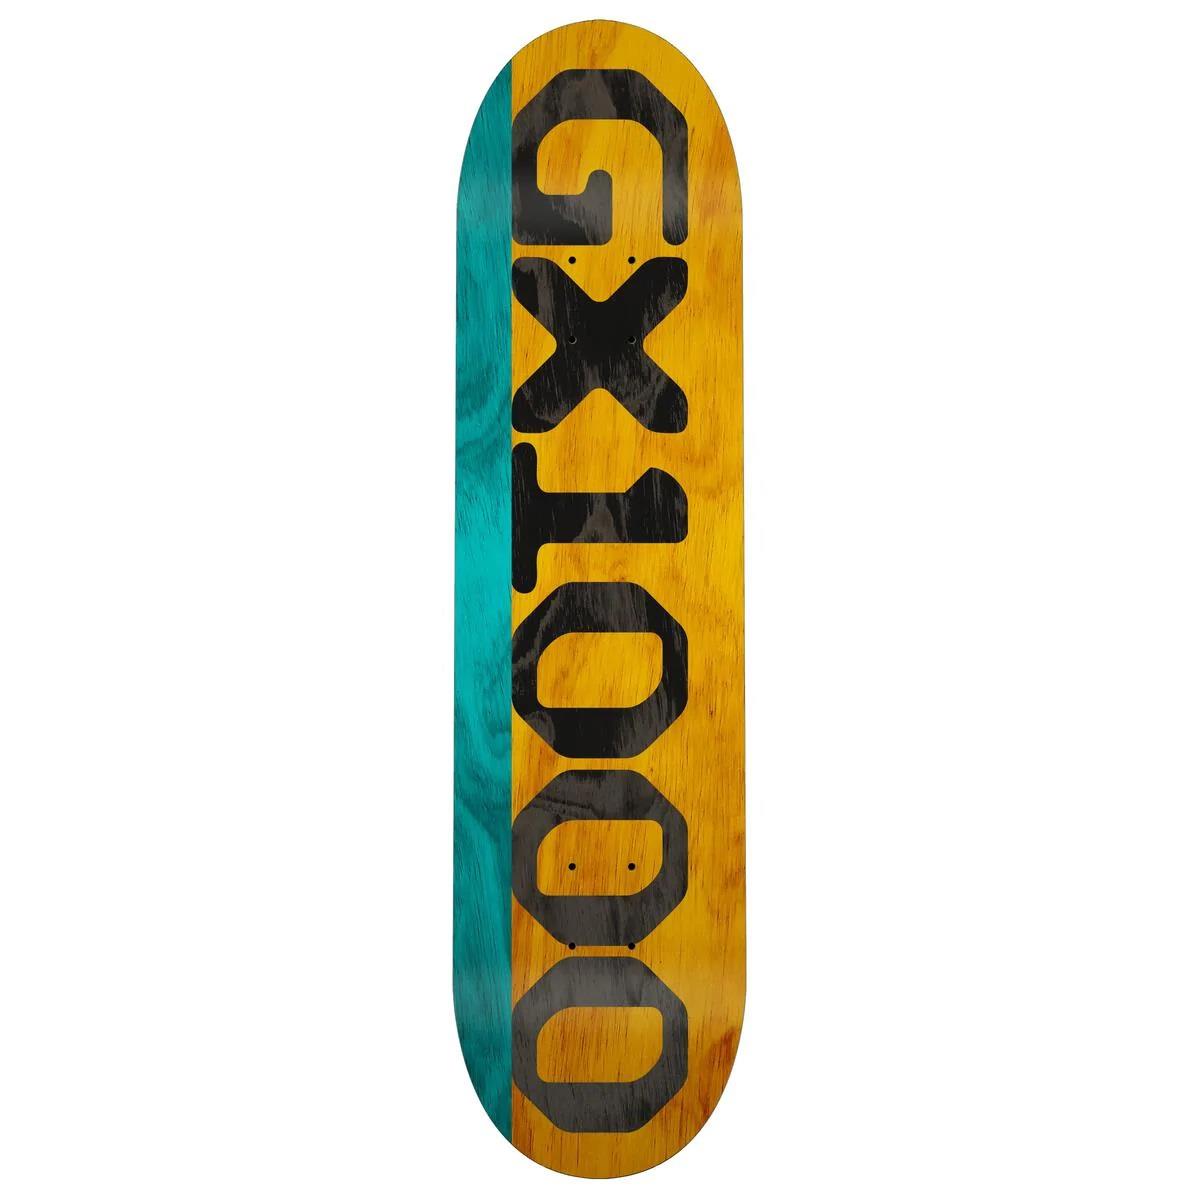 GX1000 – Deck aus geteiltem Furnier in Blaugrün/Gelb